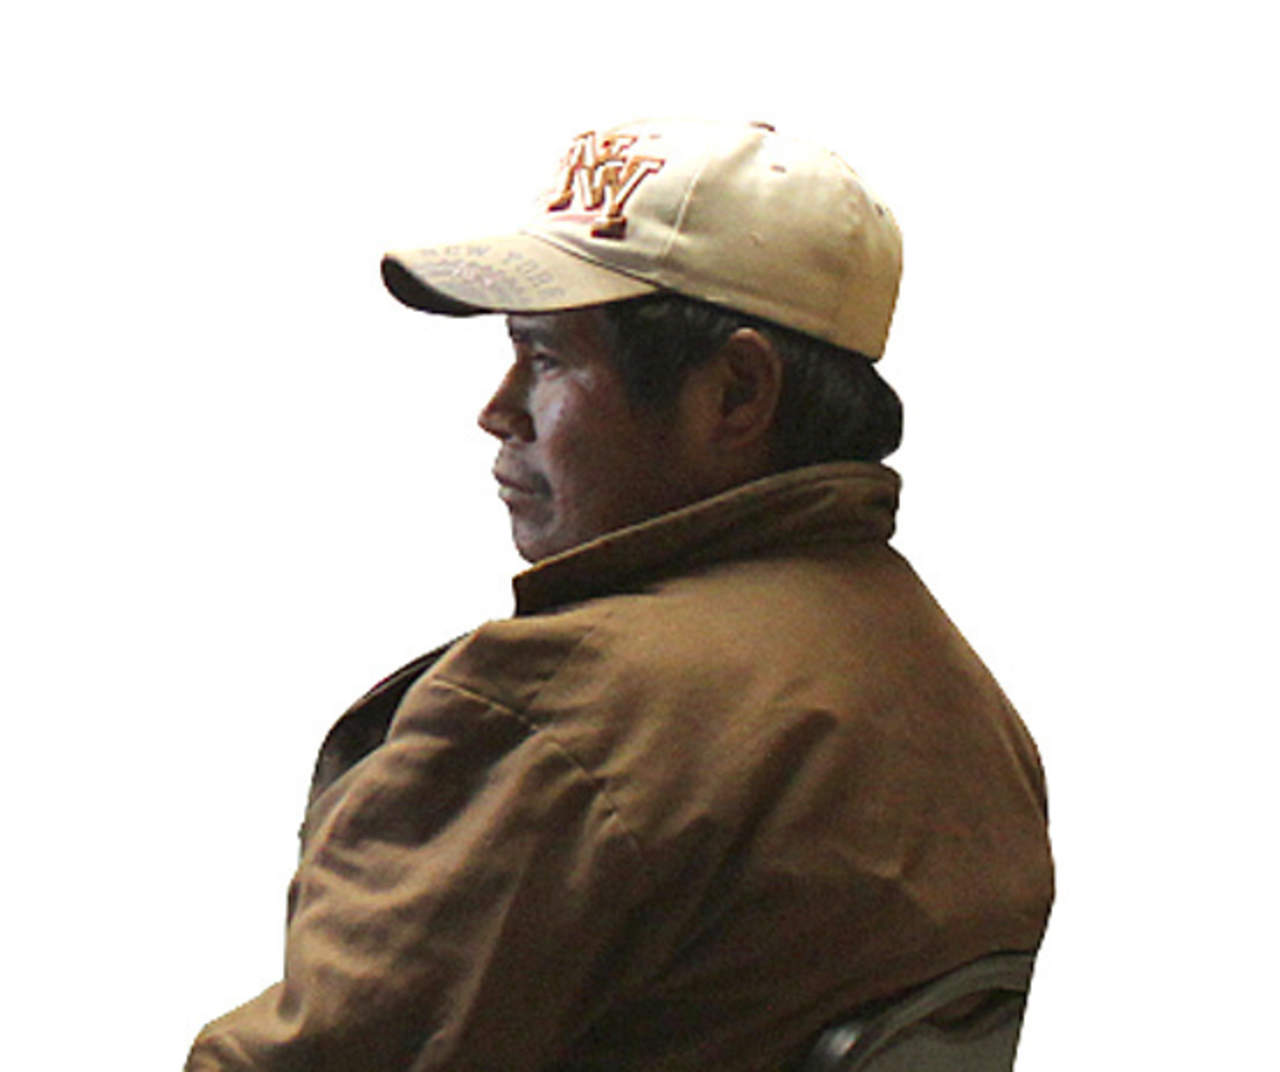 Juan Ontiveros, luchador contra la explotación maderera en su comunidad indígena tarahumara, fue localizado sin vida el miércoles en la municipalidad de Guadalupe y Calvo. (ARCHIVO)